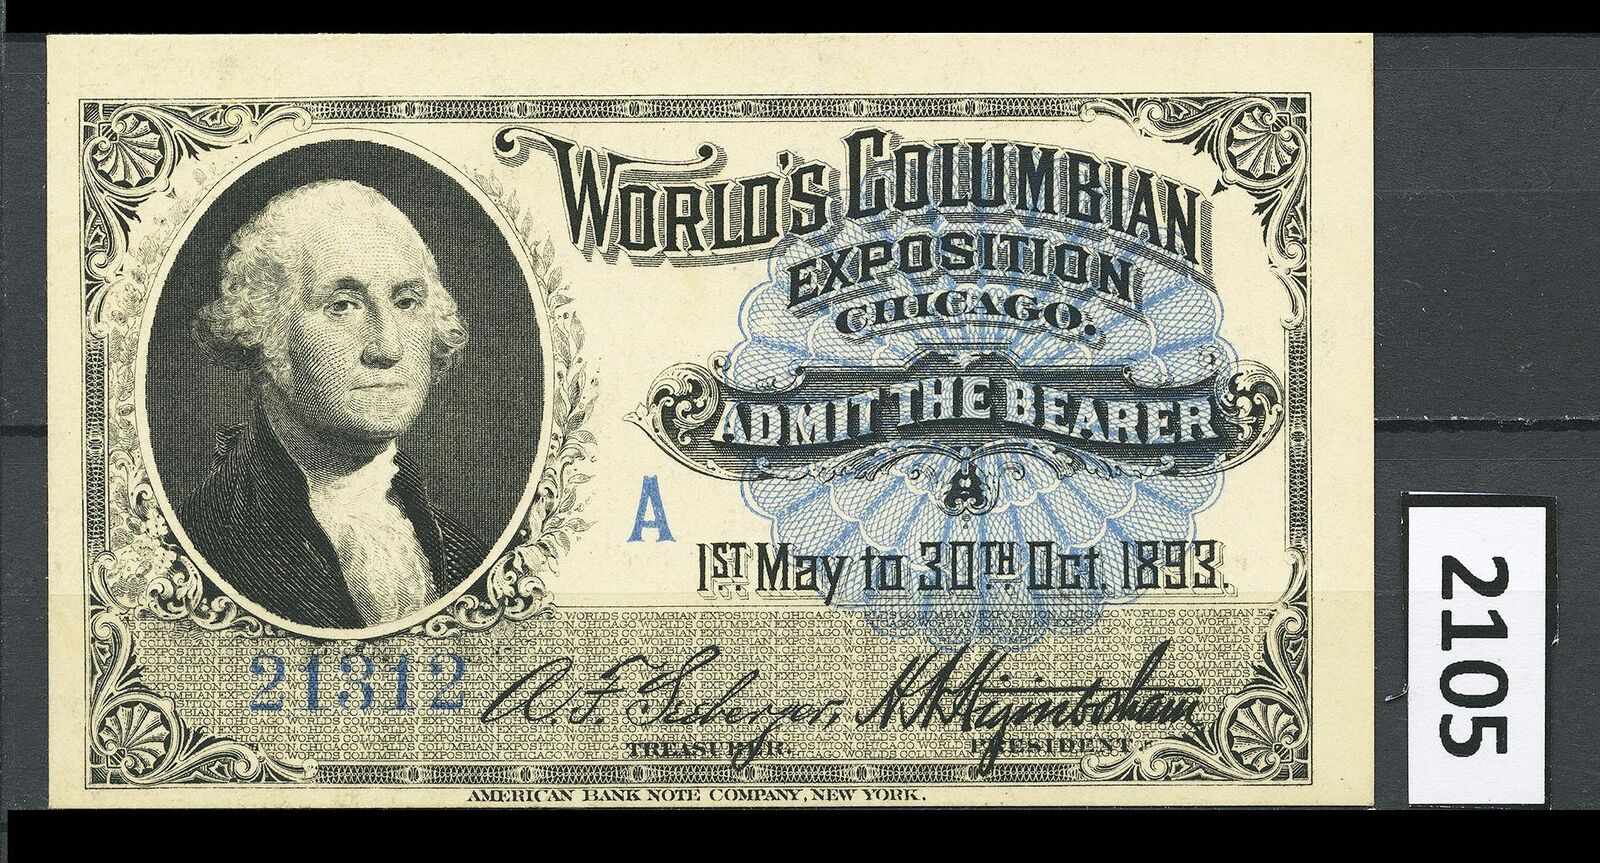 Dealer Dave Columbian Exposition 1893, WASHINGTON PORTRAIT TICKET, MINT (2105)